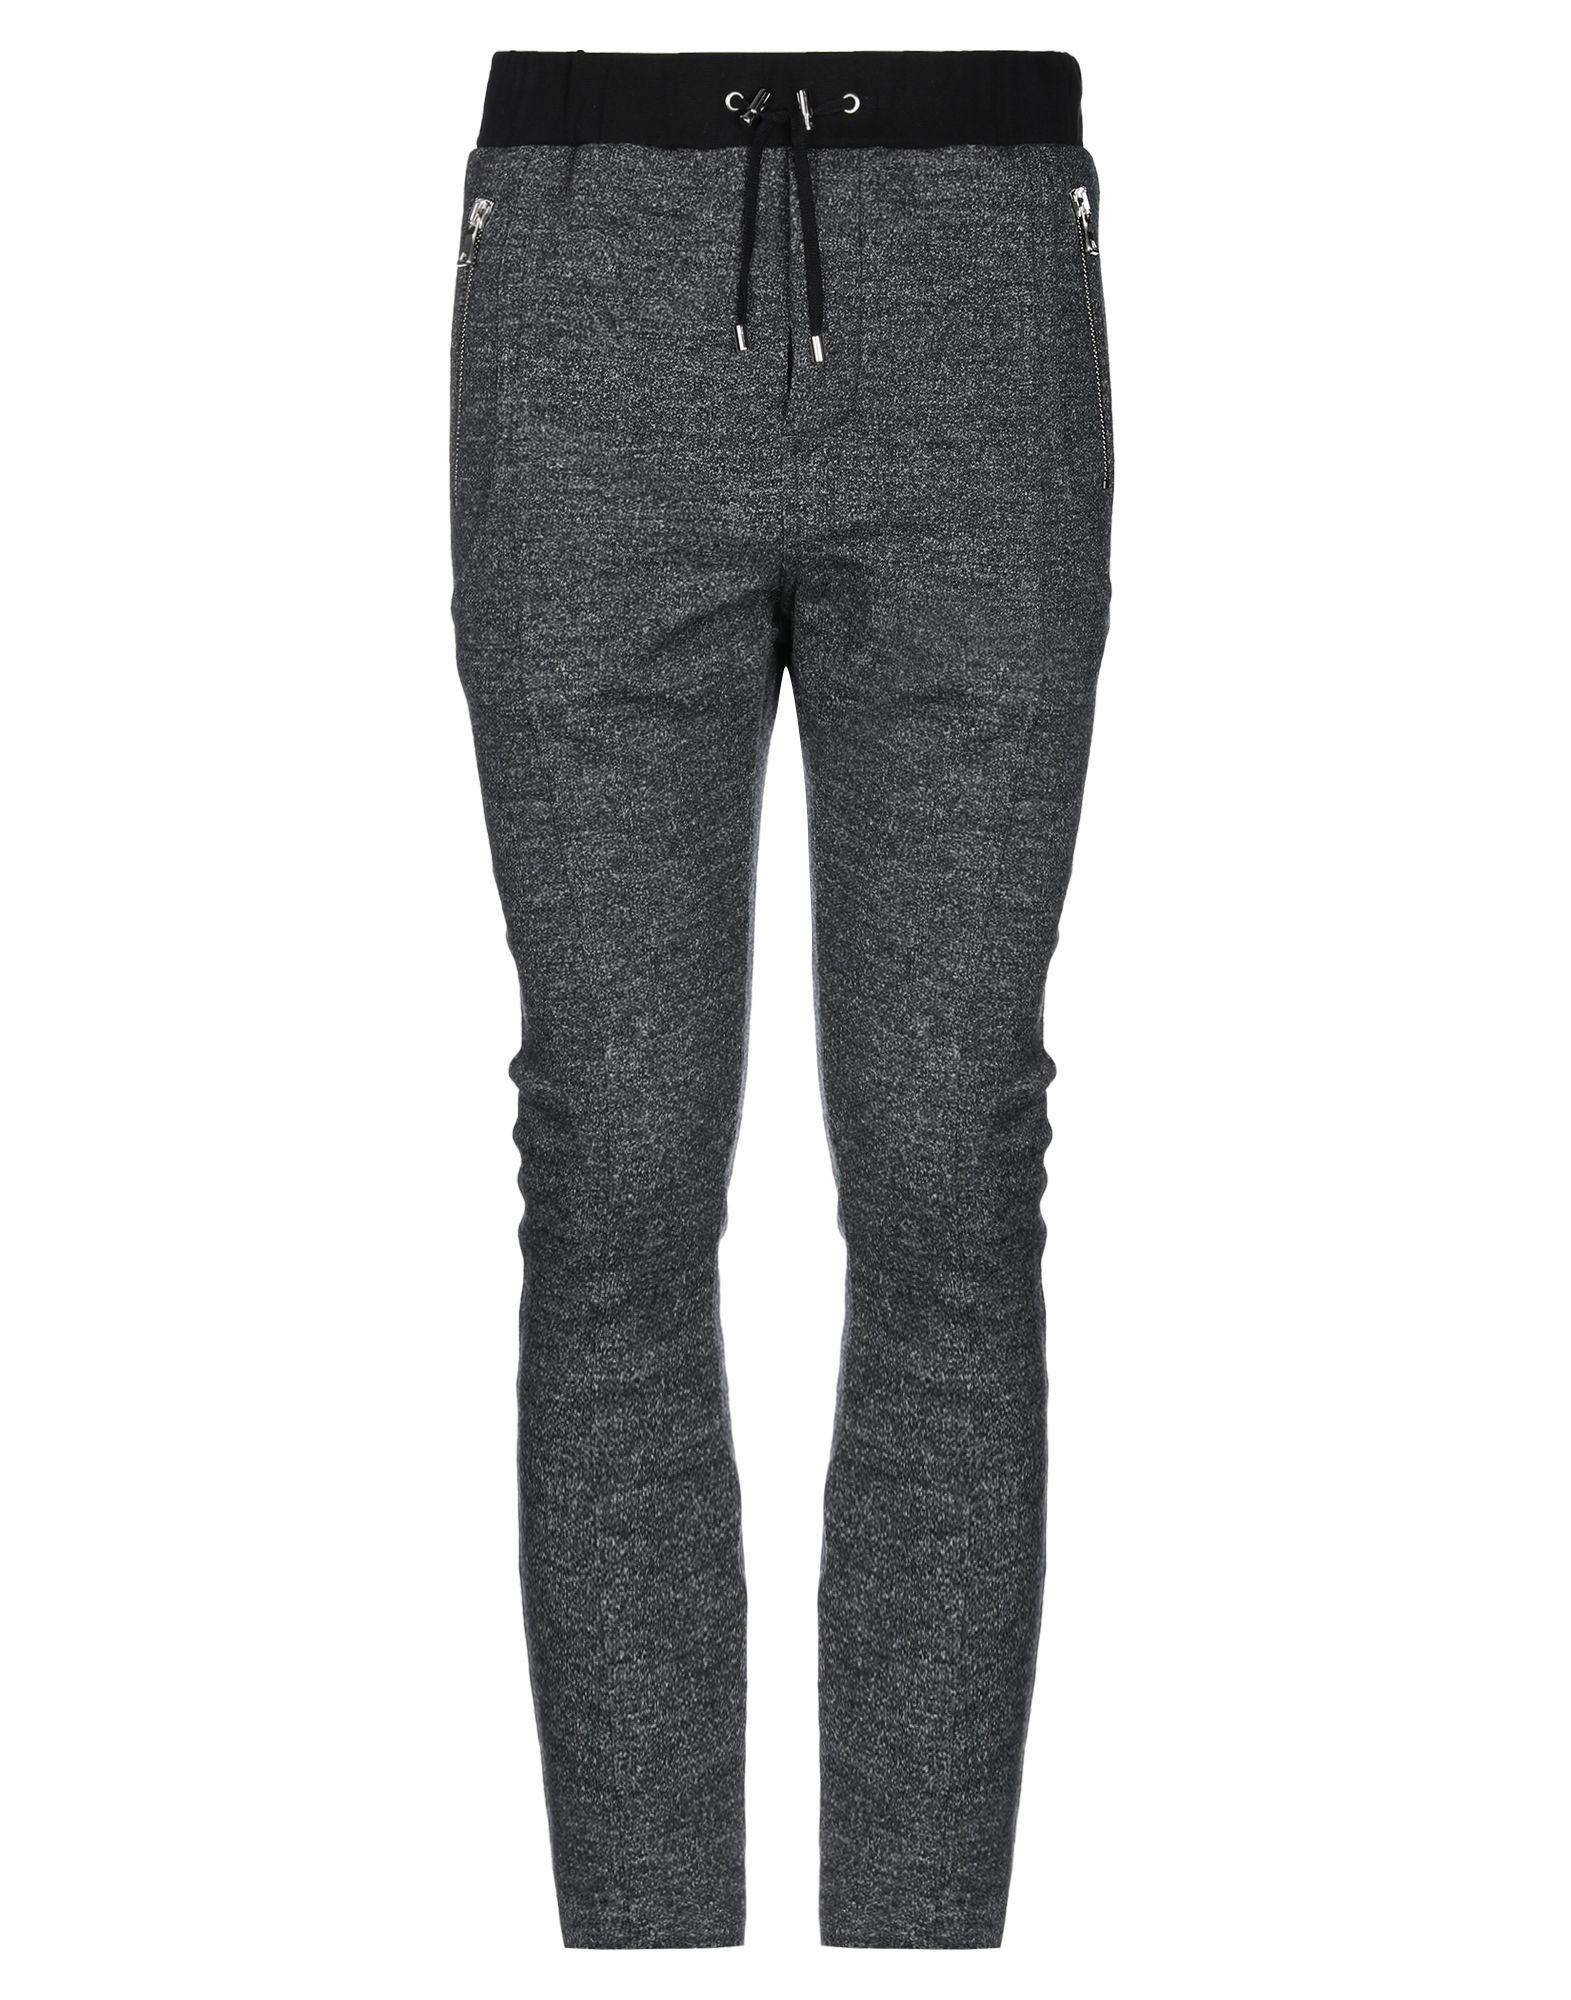 Balmain Flannel Casual Pants in Lead (Gray) for Men - Lyst